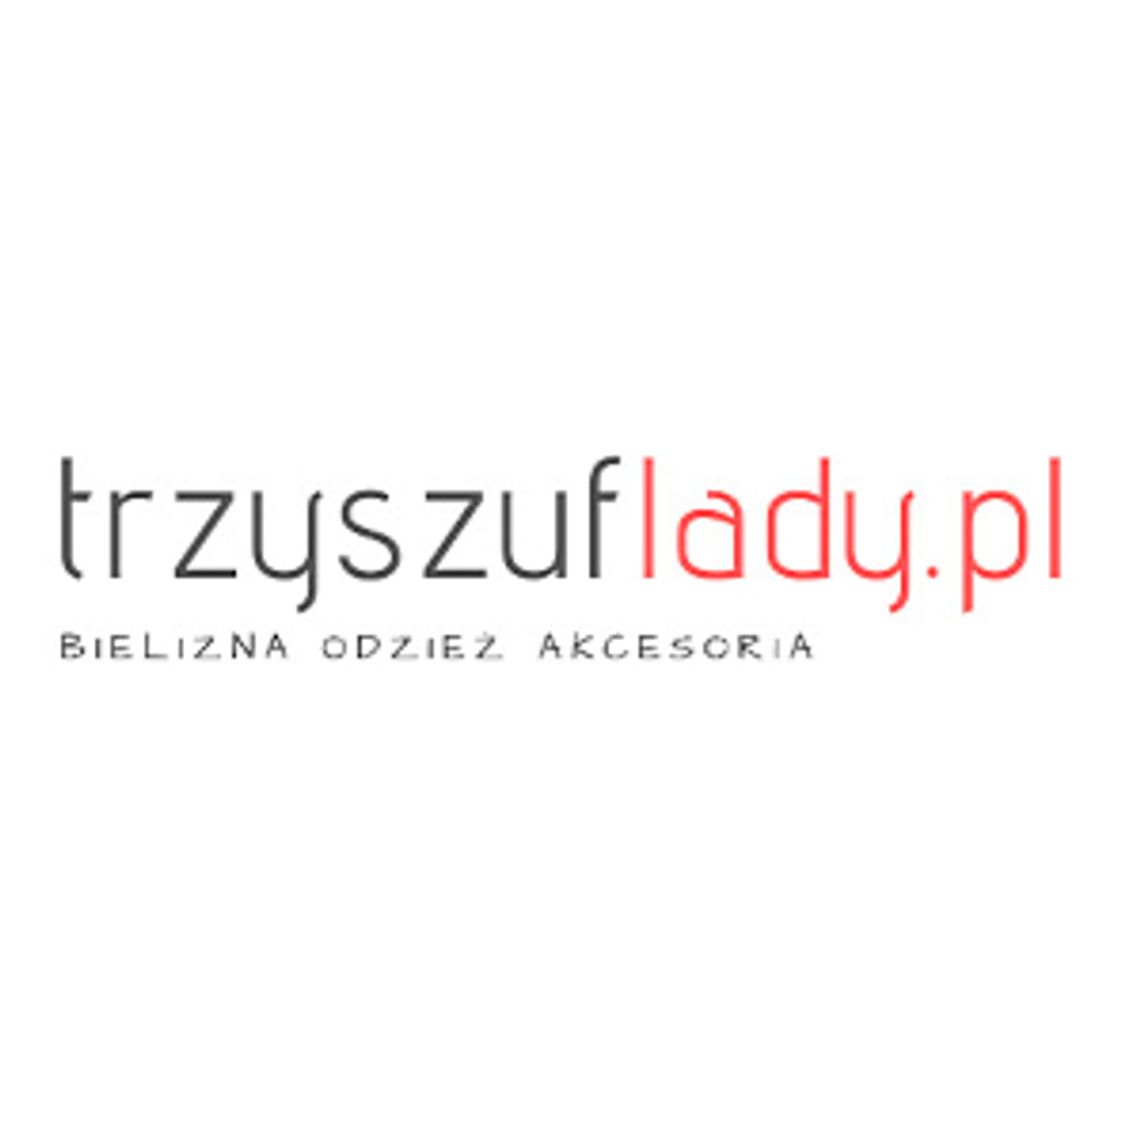 Sklep internetowy z odzieżą damską i męską - trzyszuflady.pl